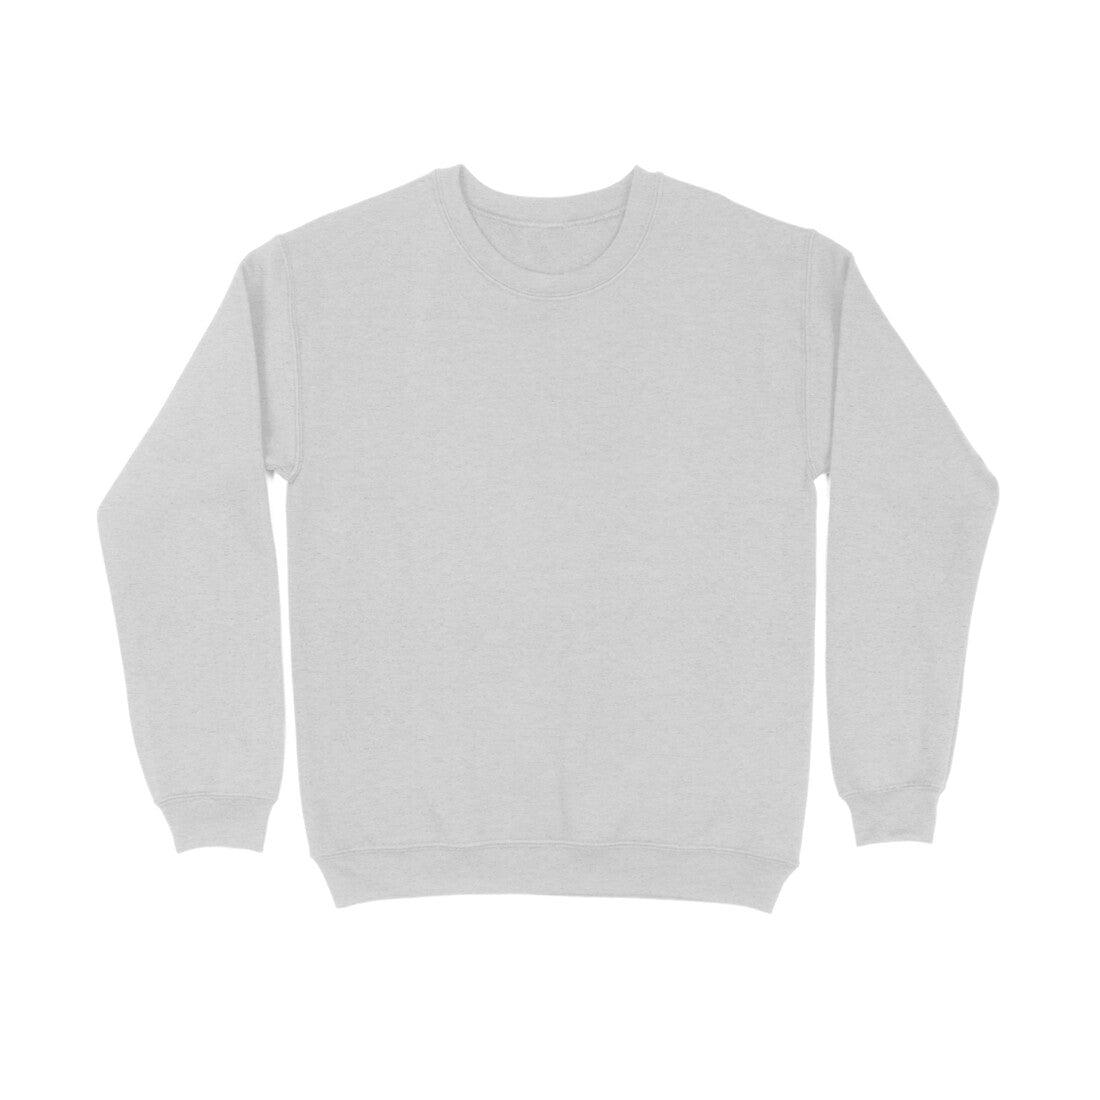 DT Raw Solid Unisex Sweatshirts